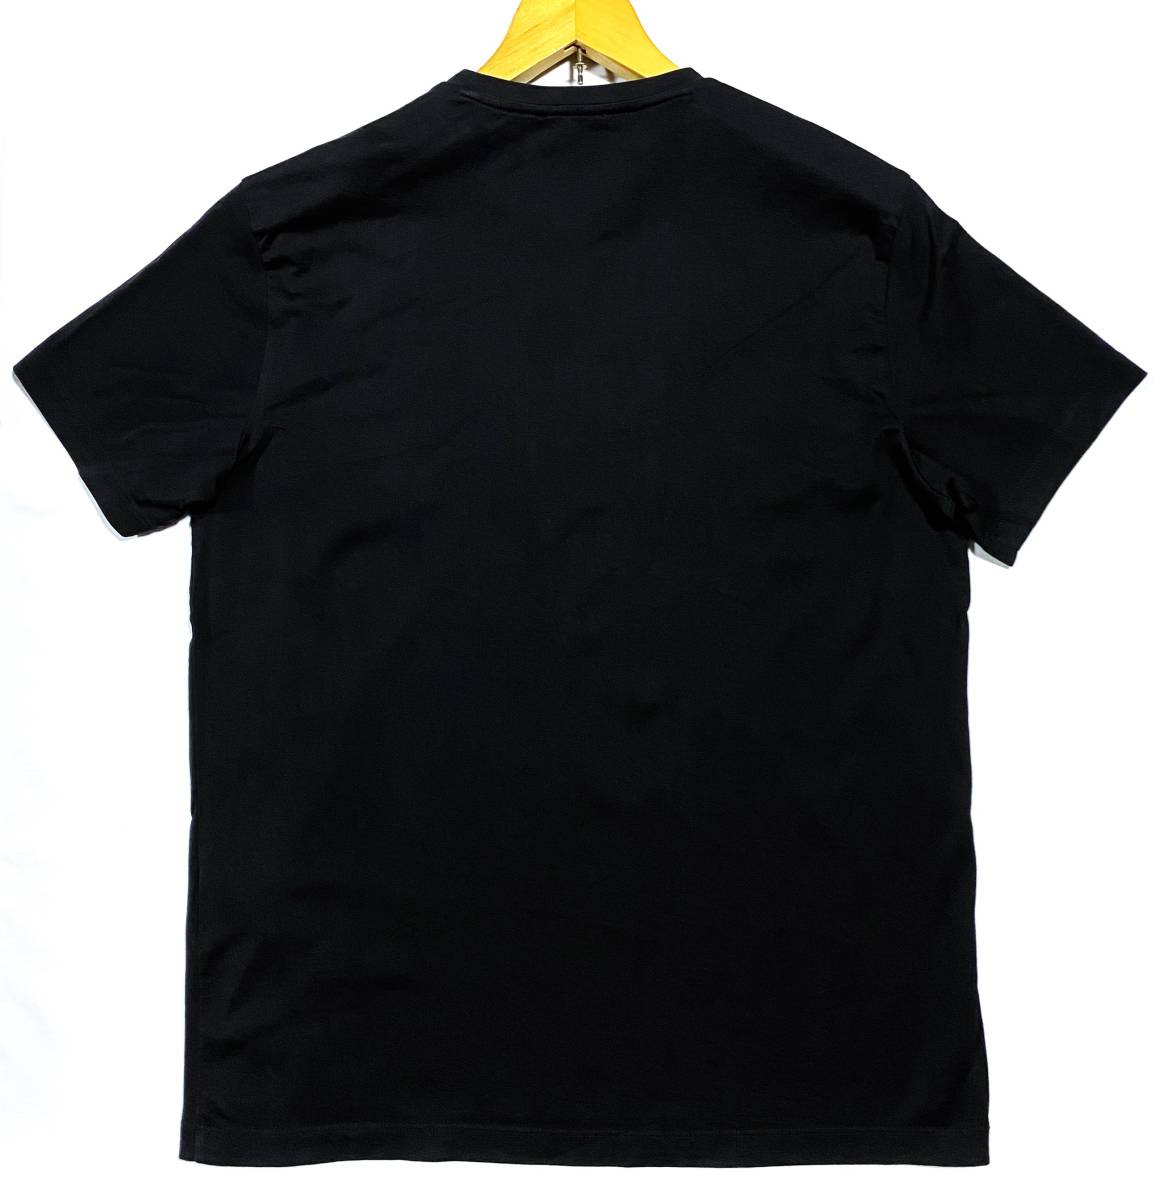 ★EMPORIO ARMANI エンポリオアルマーニ 半袖Tシャツ 黒★サイズ L★の画像2